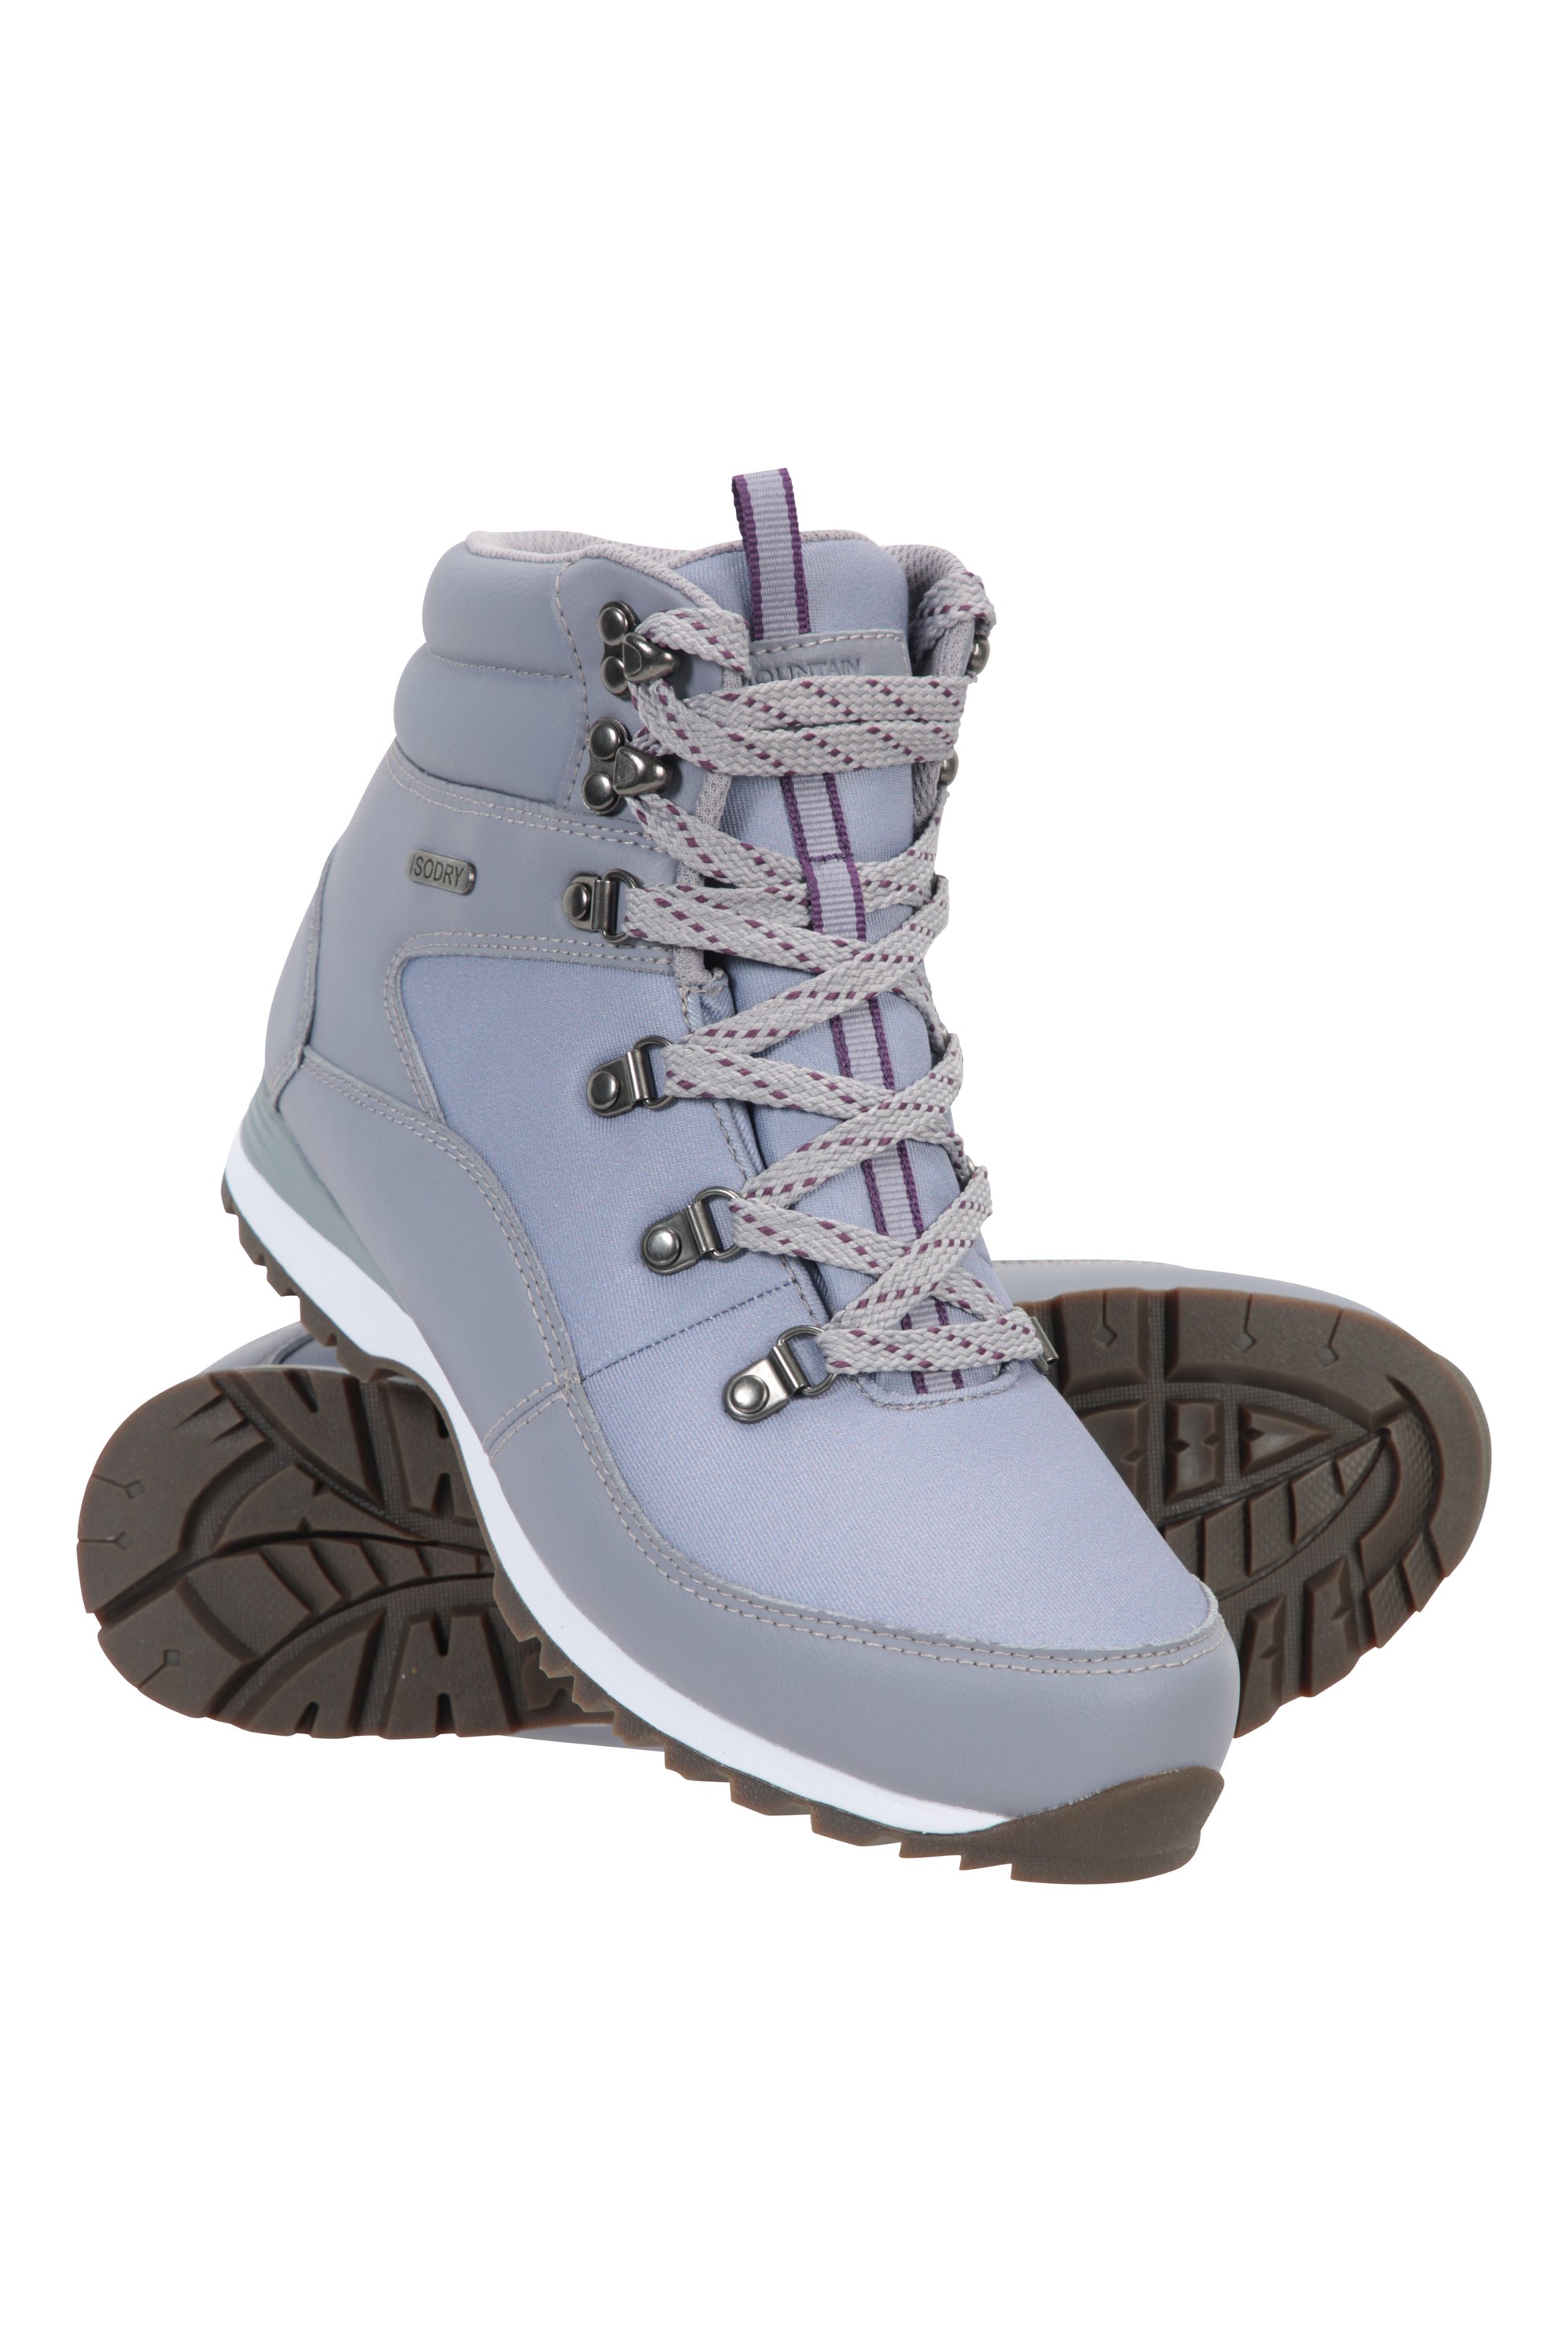 Montana Waterproof Womens Walking Boots - Purple